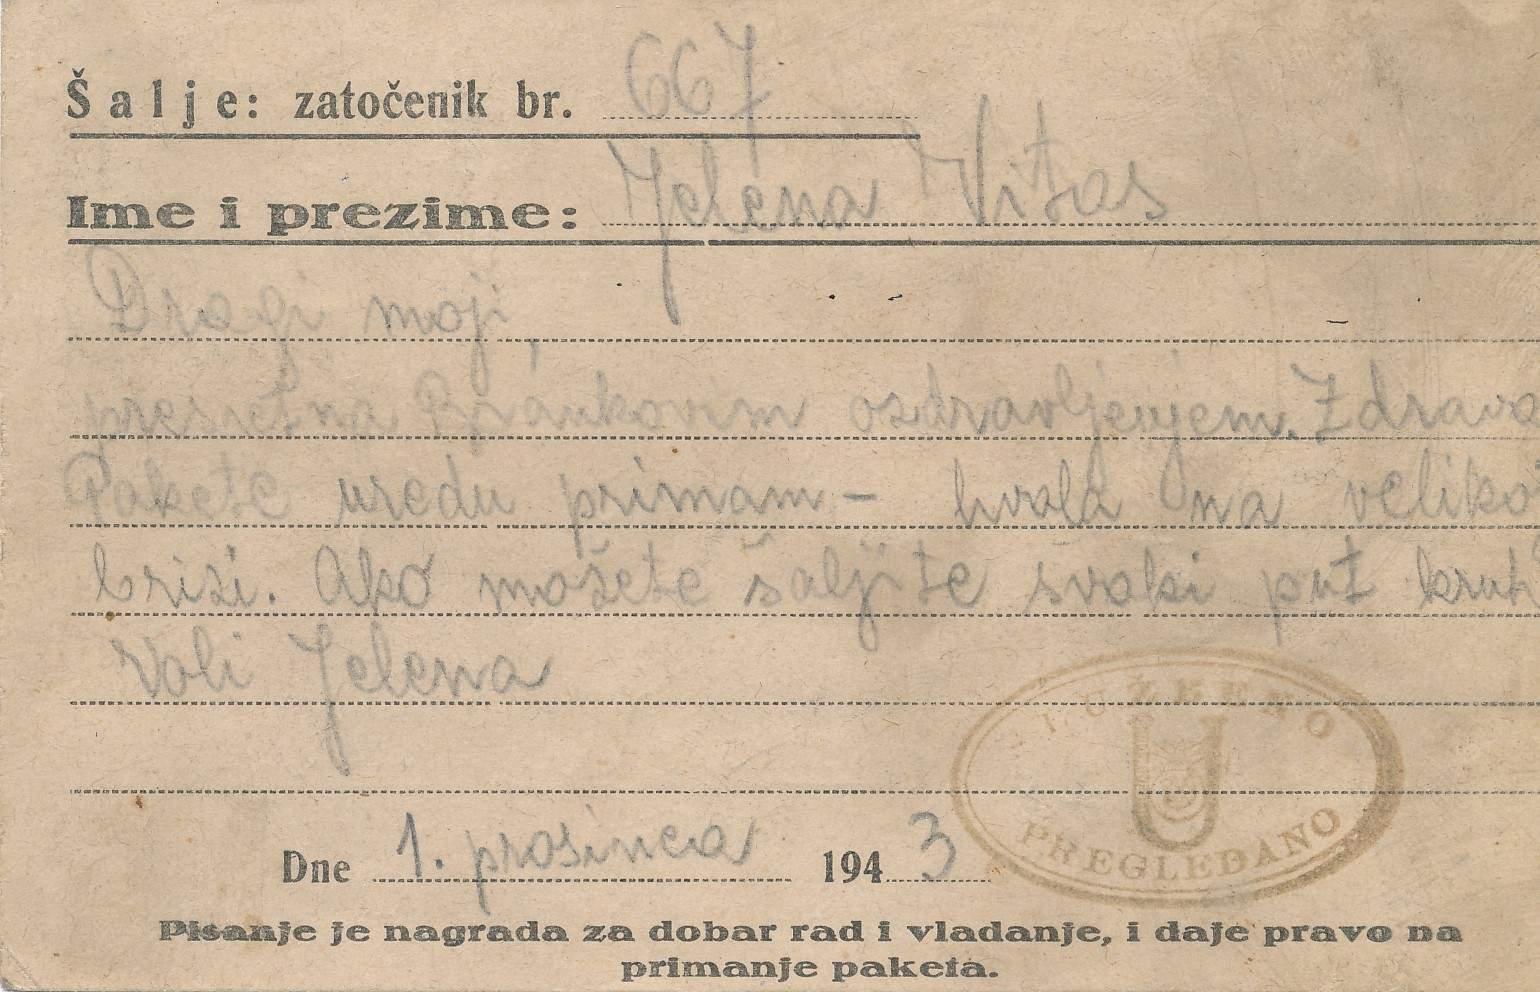 Jelenino pismo porodici iz Jasenovca u decembru 1943.: Zatočena i mučena u logoru, a piše da je sretna zbog bratovog ozdravljenja - Avaz